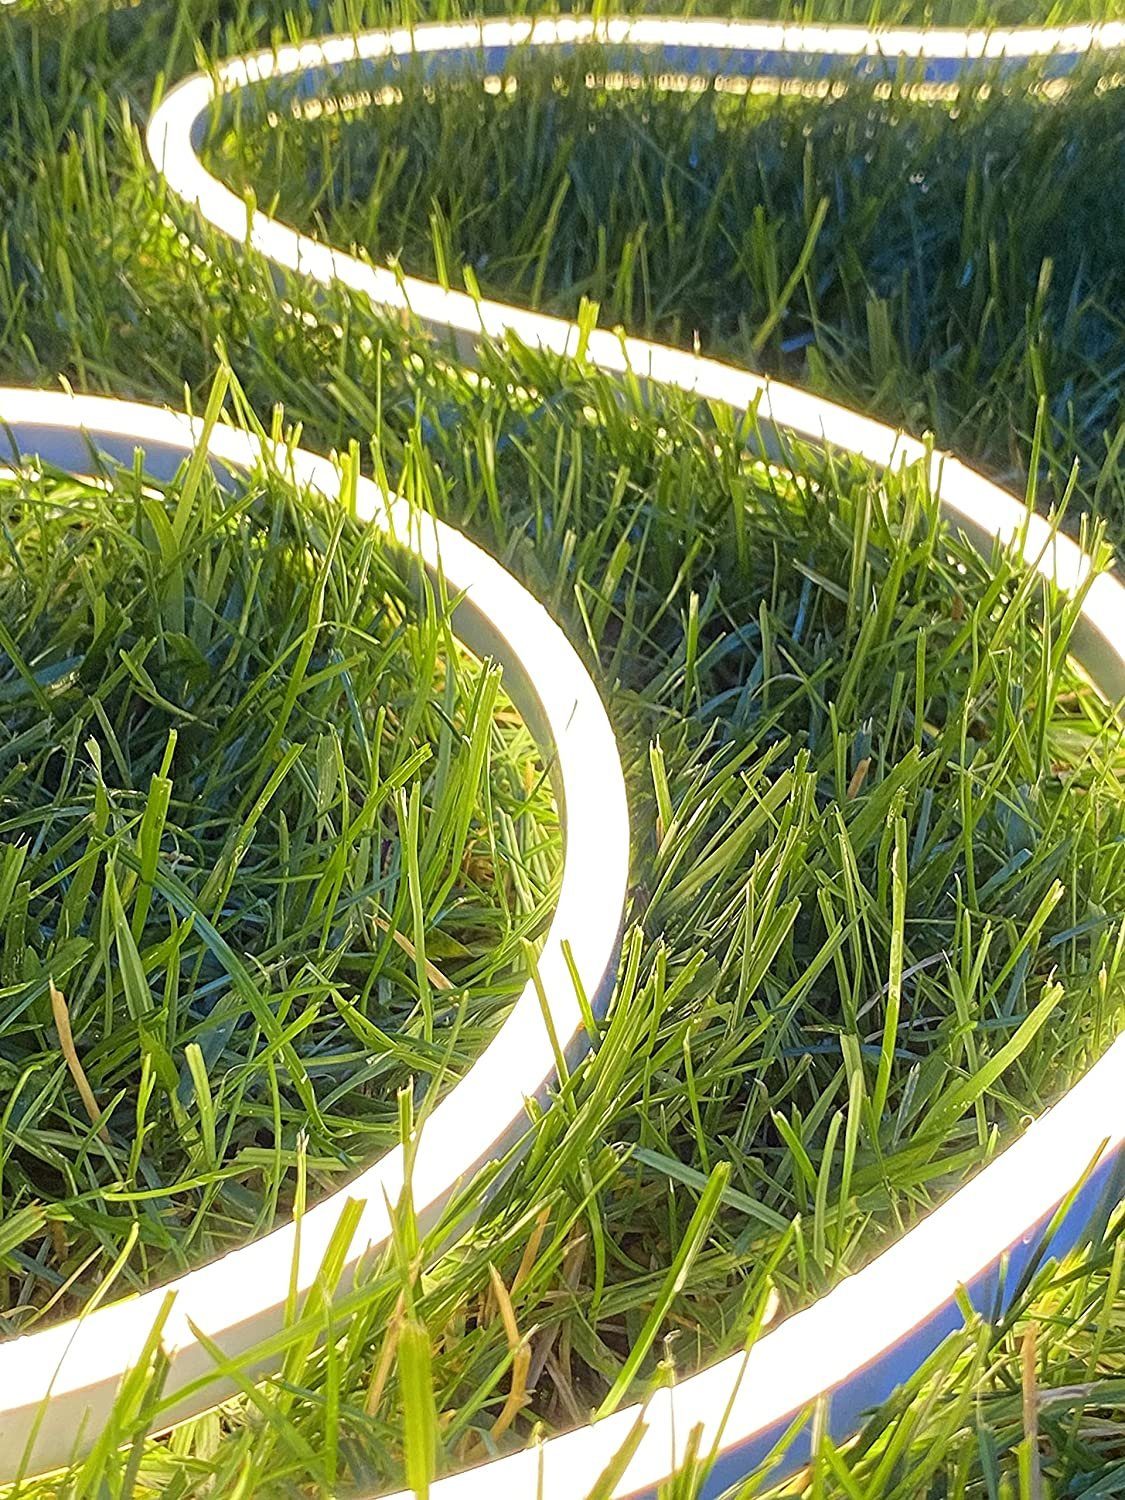 Ogeled LED Lichtleiste Neon Strip Dimmbar 230V Warmweiß Kaltweiß Wasserfest Kaltweiss